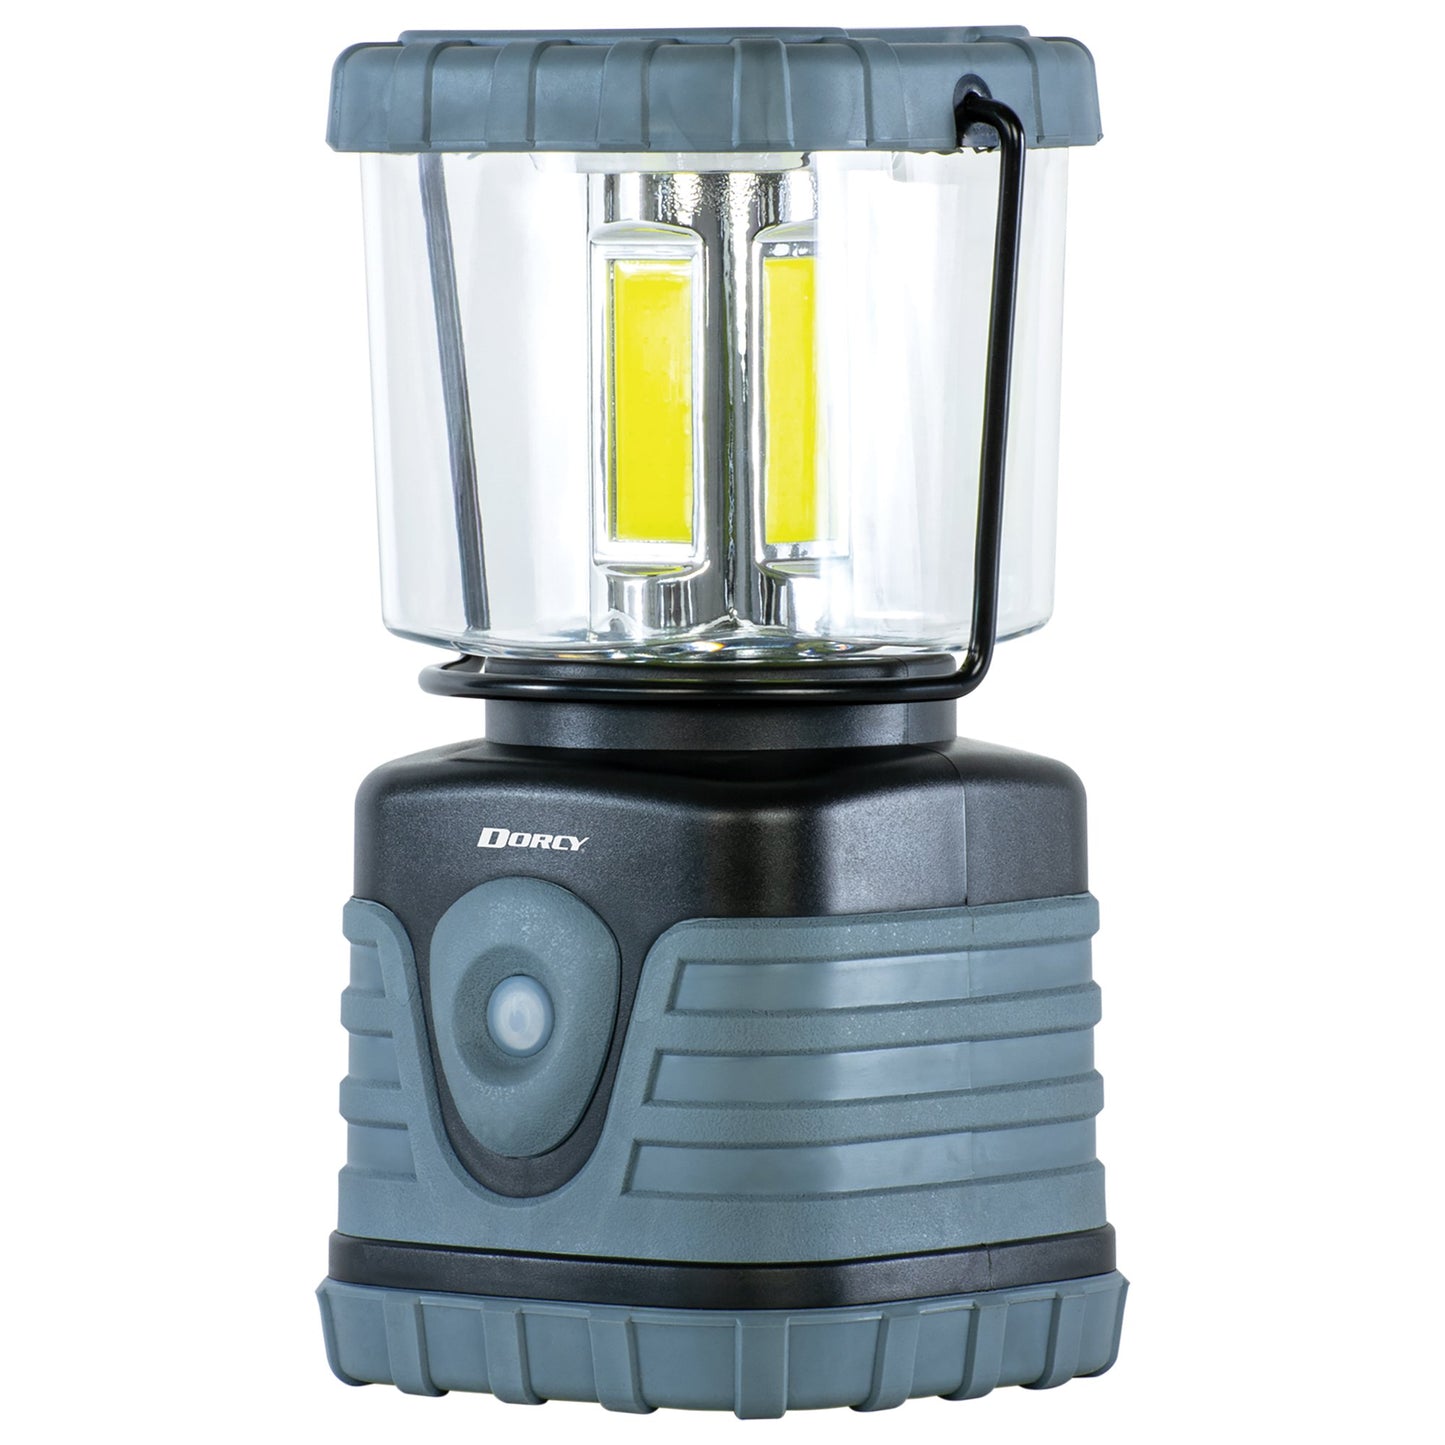 Dorcy 41-3120 Adventure Max 3,000-Lumen Outdoor Lantern